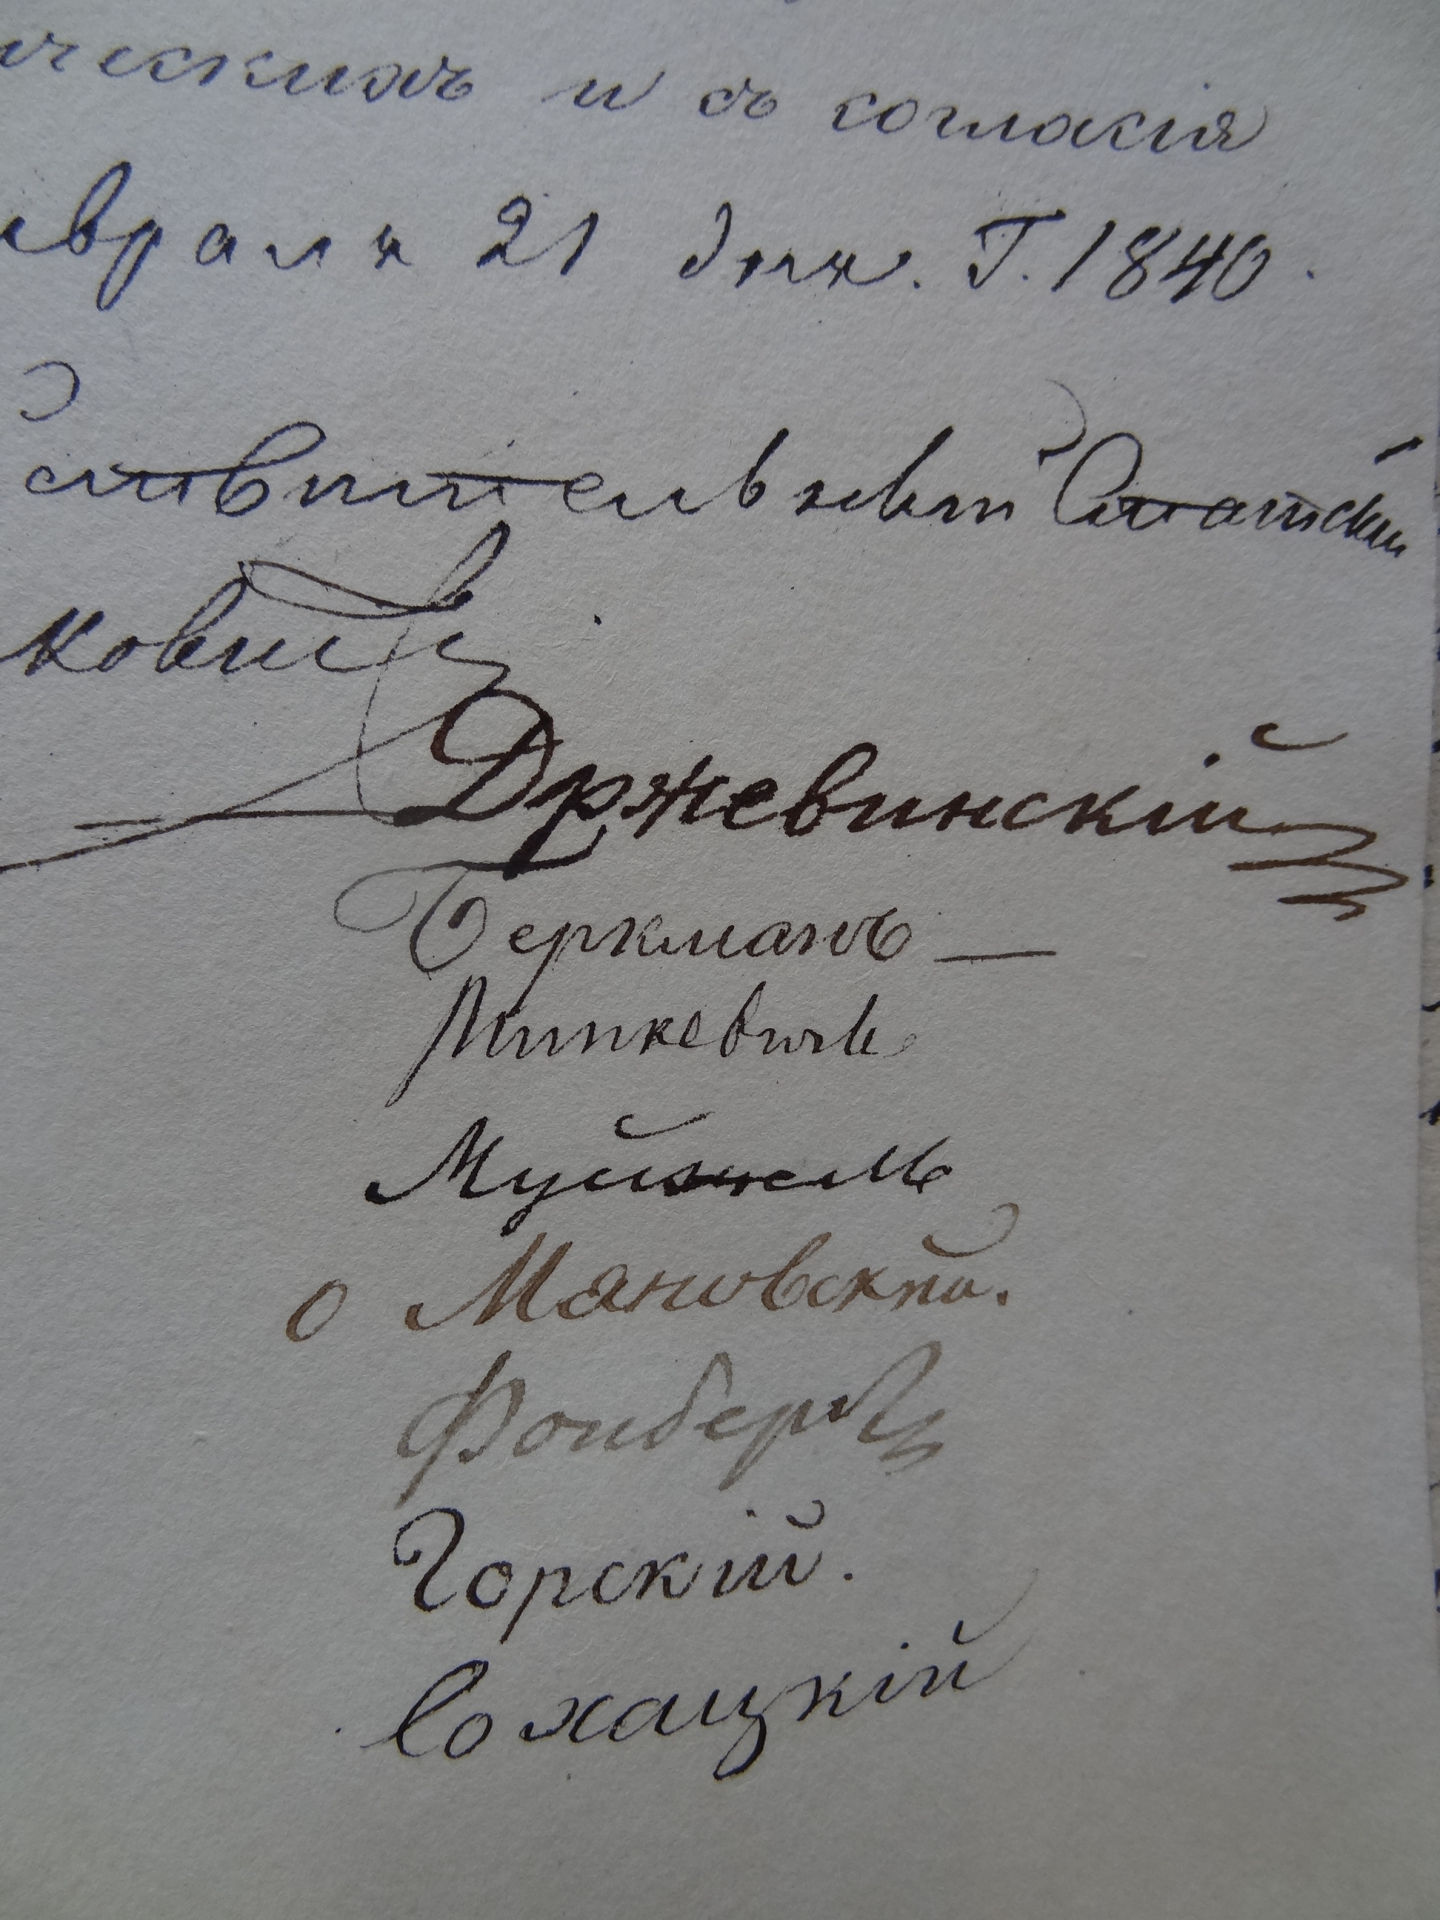 Signatures in Russian: Drzewiński, Rymkiewicz, Muyschel, Fonberg, Gorski et al.